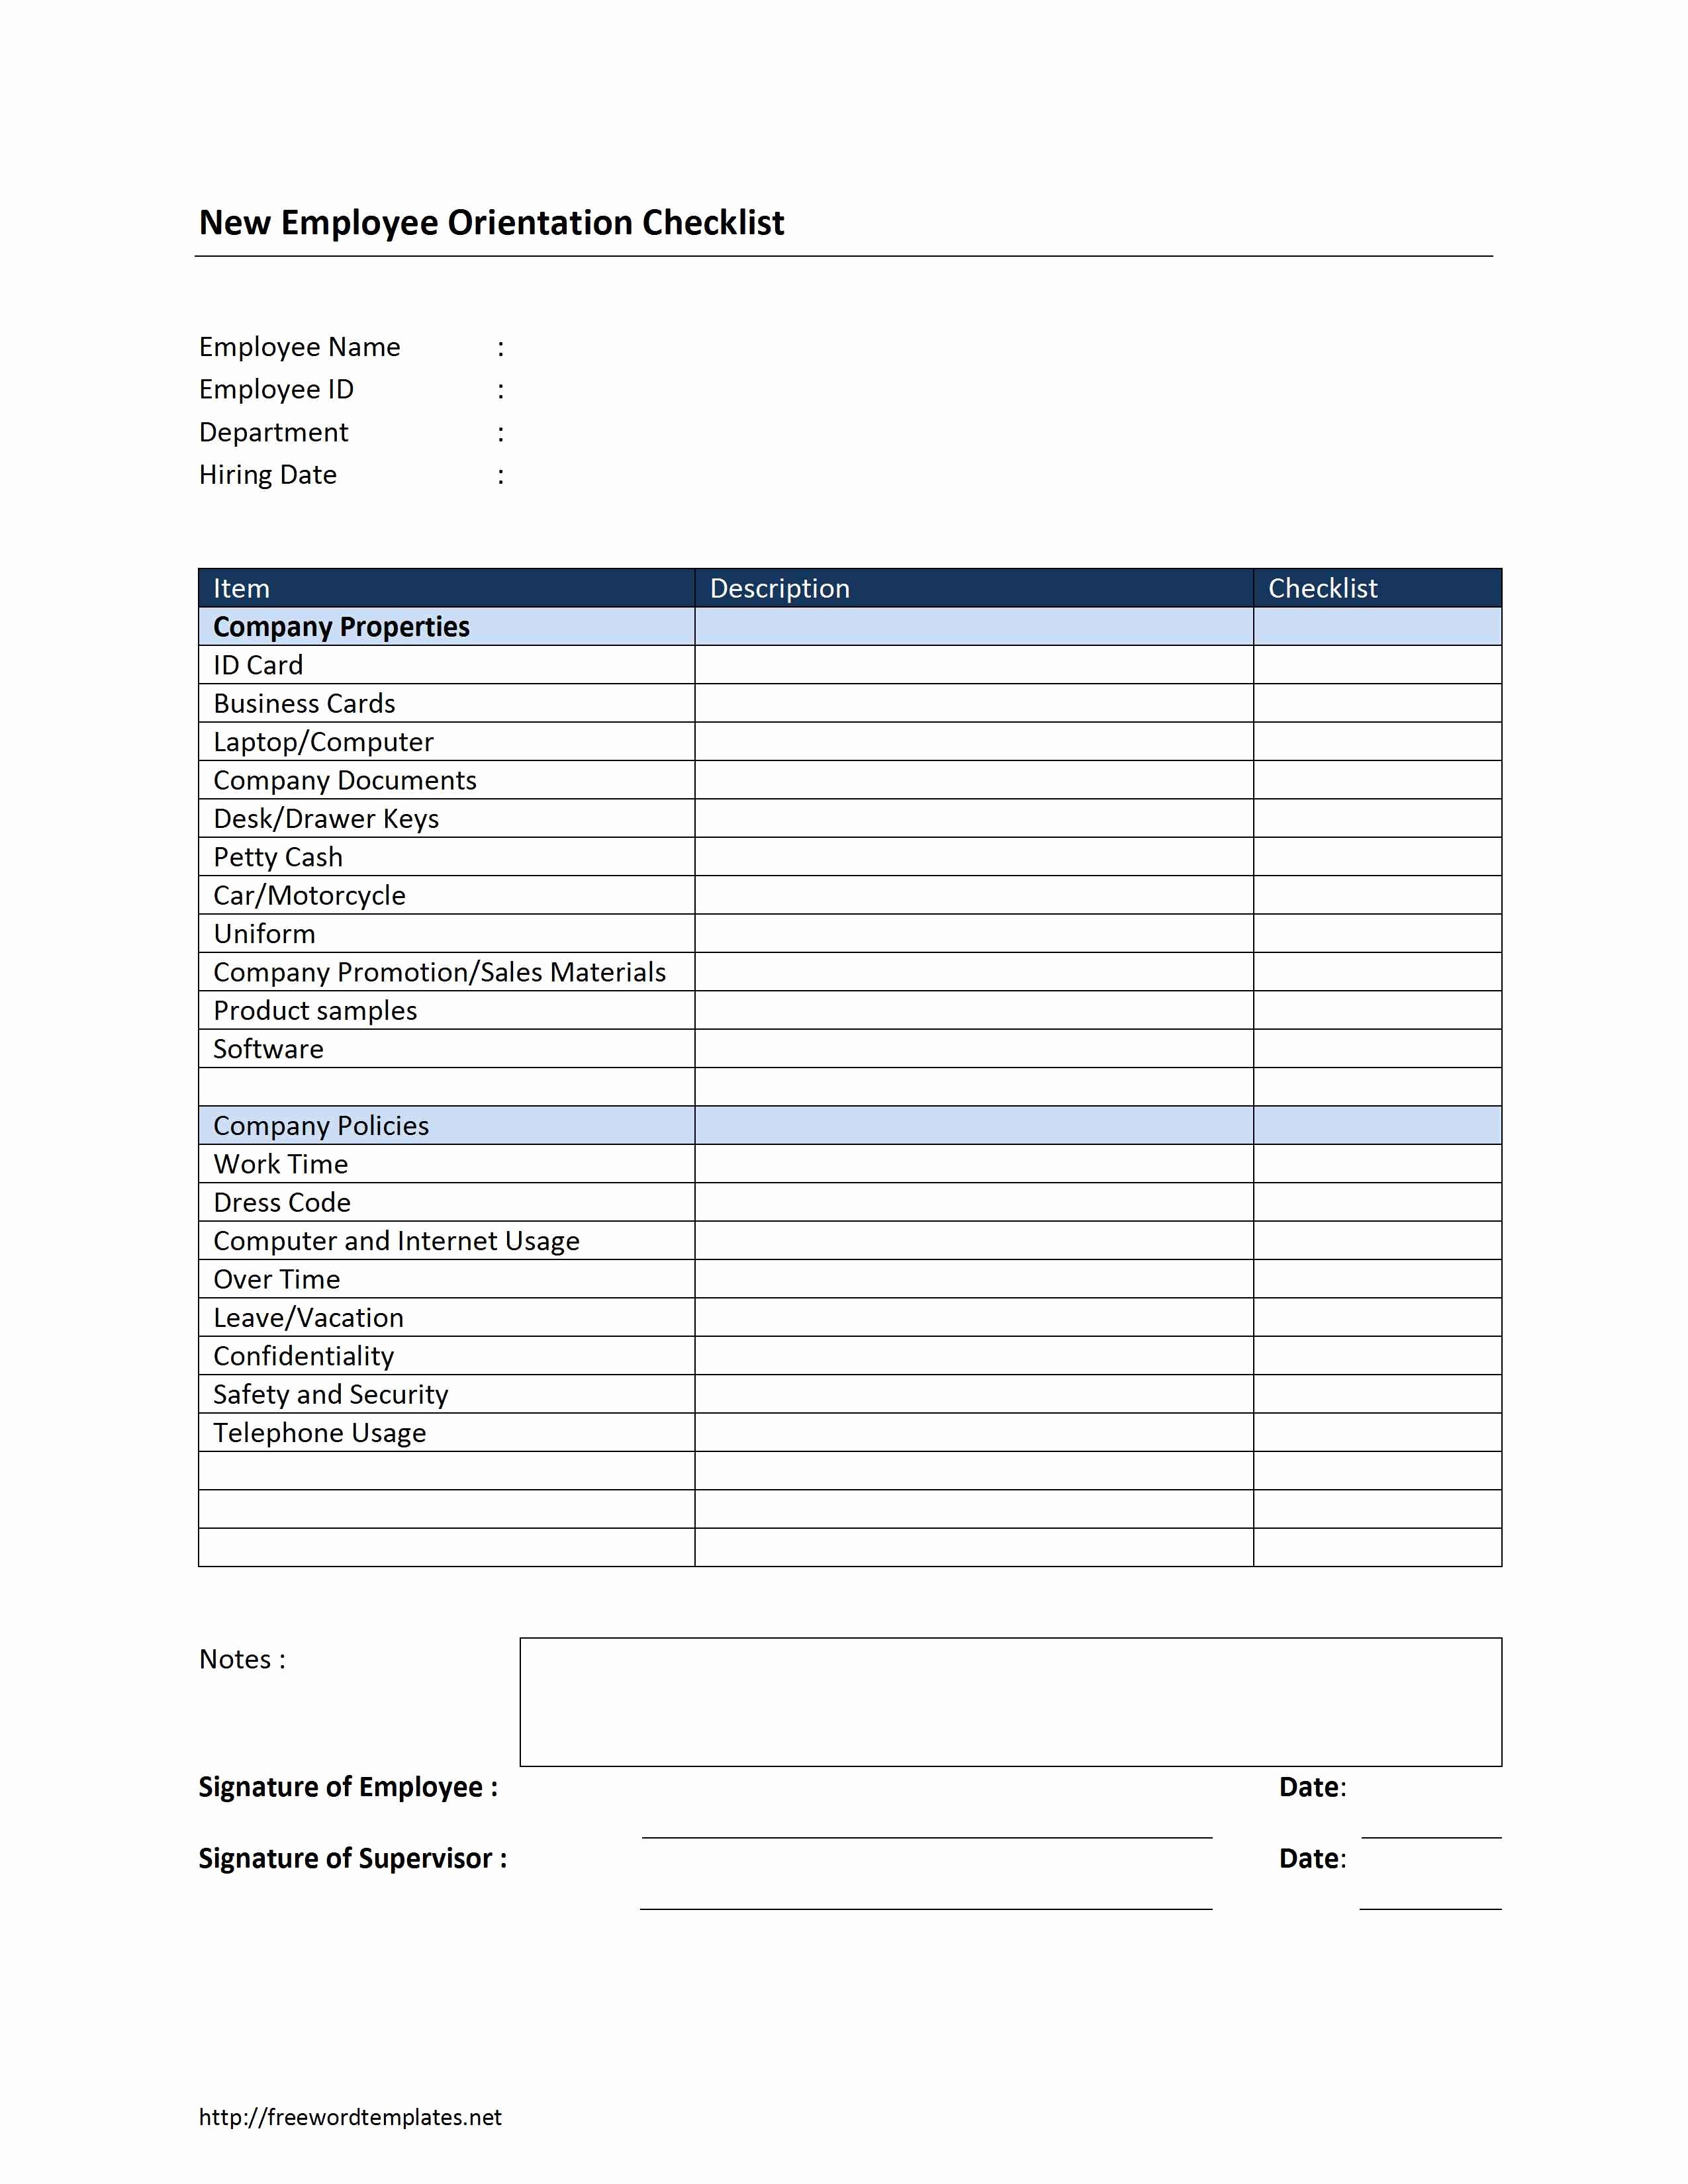 Training Checklist Template Excel Free Fresh New Employee orientation Checklist